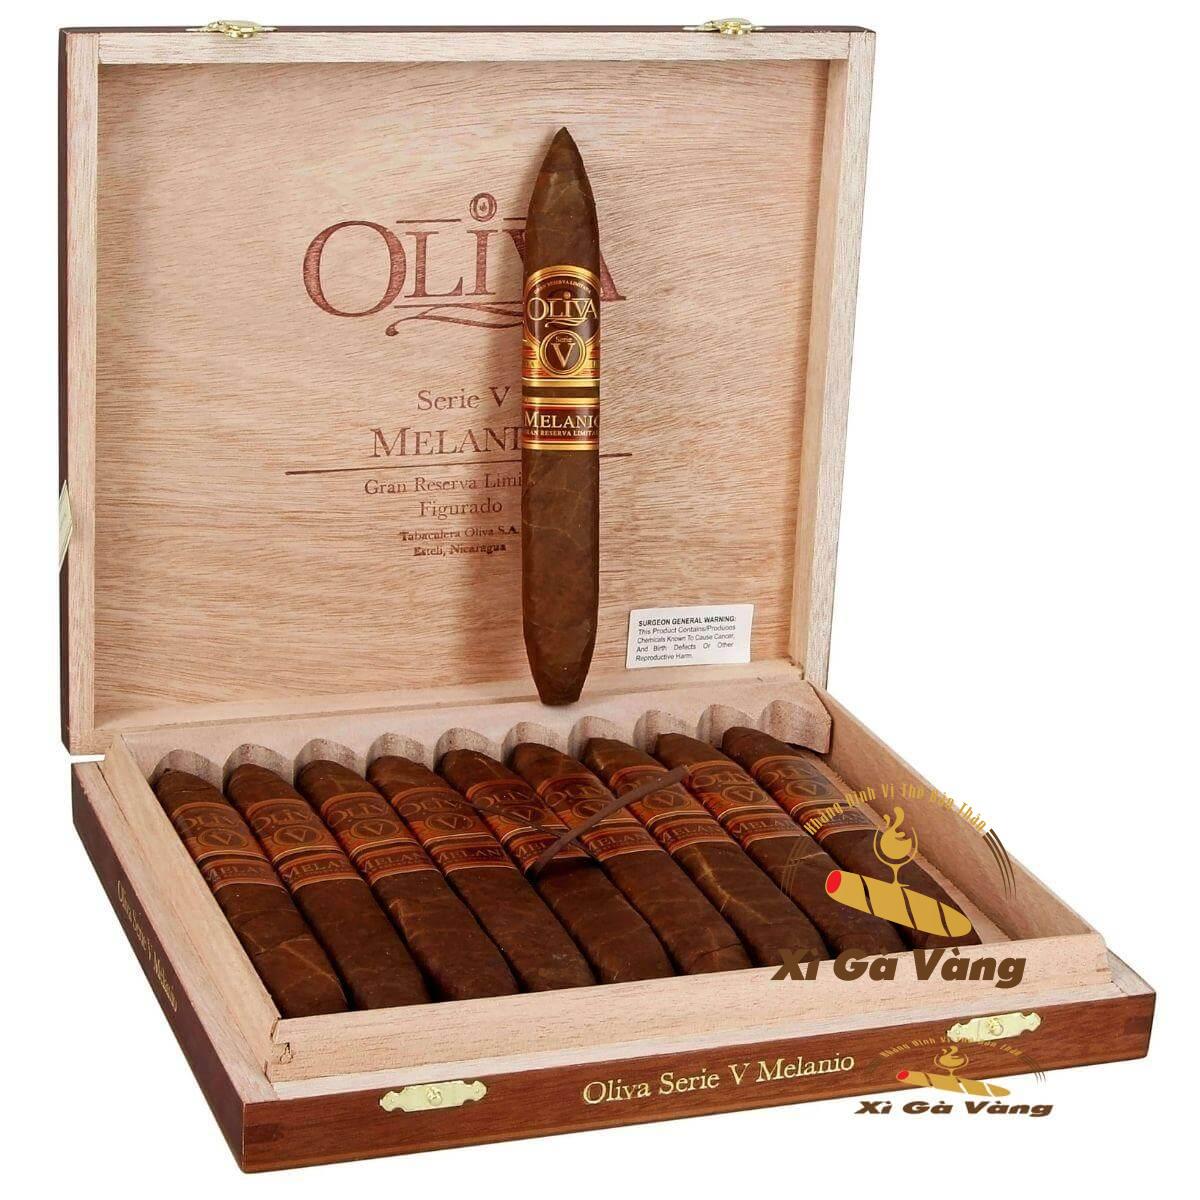 Oliva Serie V Melanio Figurado được bình chọn là loại xì gà ngon nhất